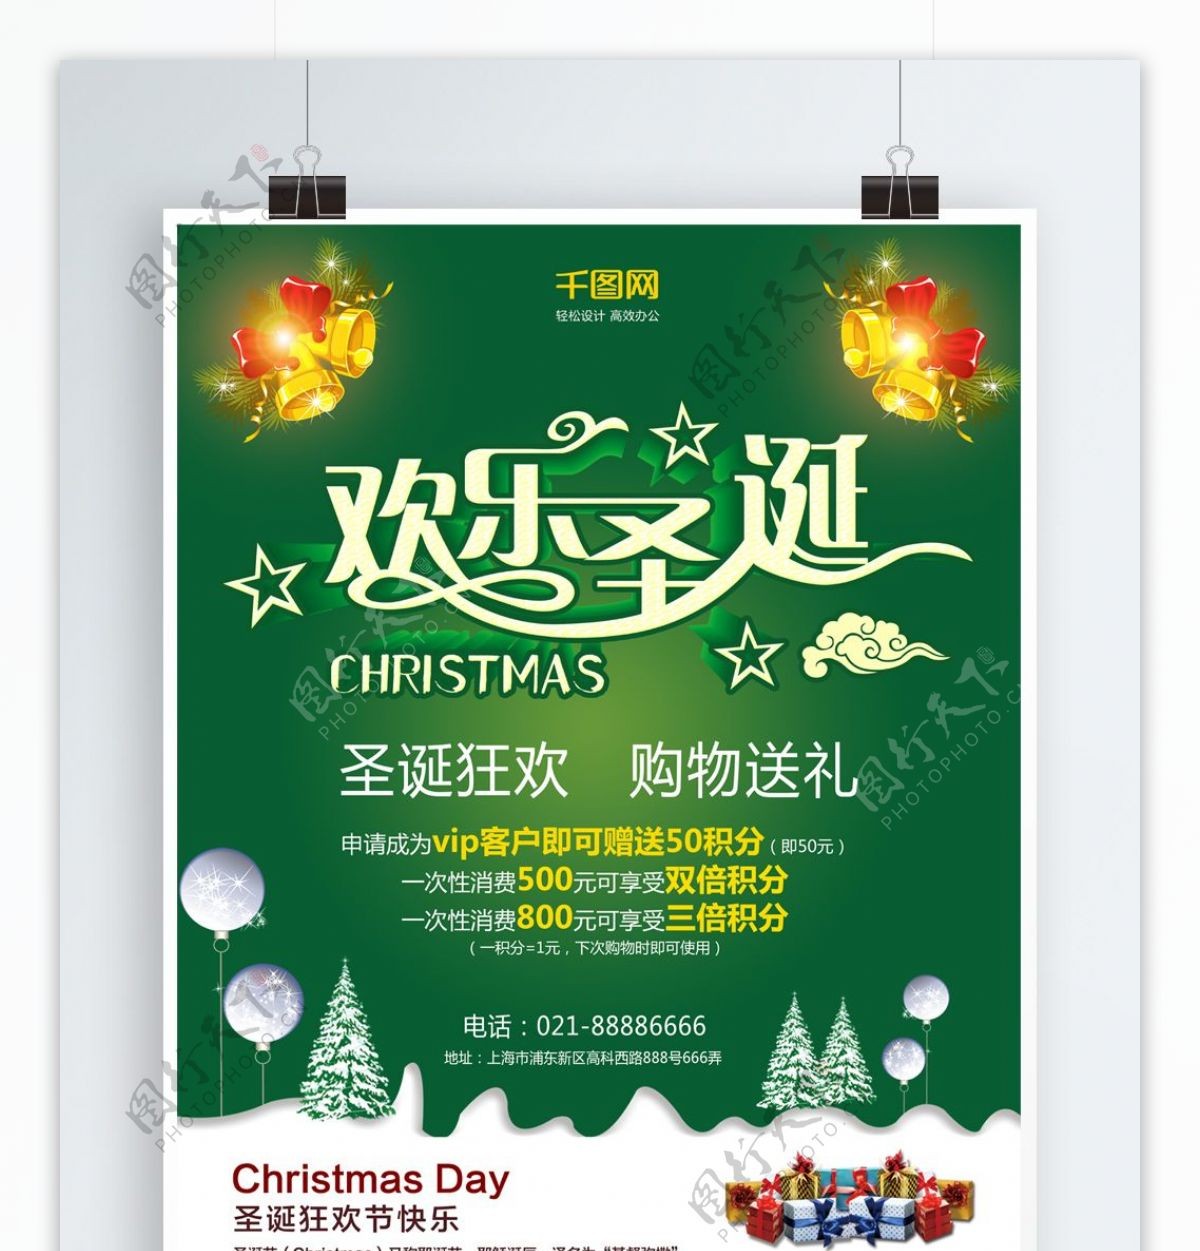 绿色简约商场圣诞节促销海报